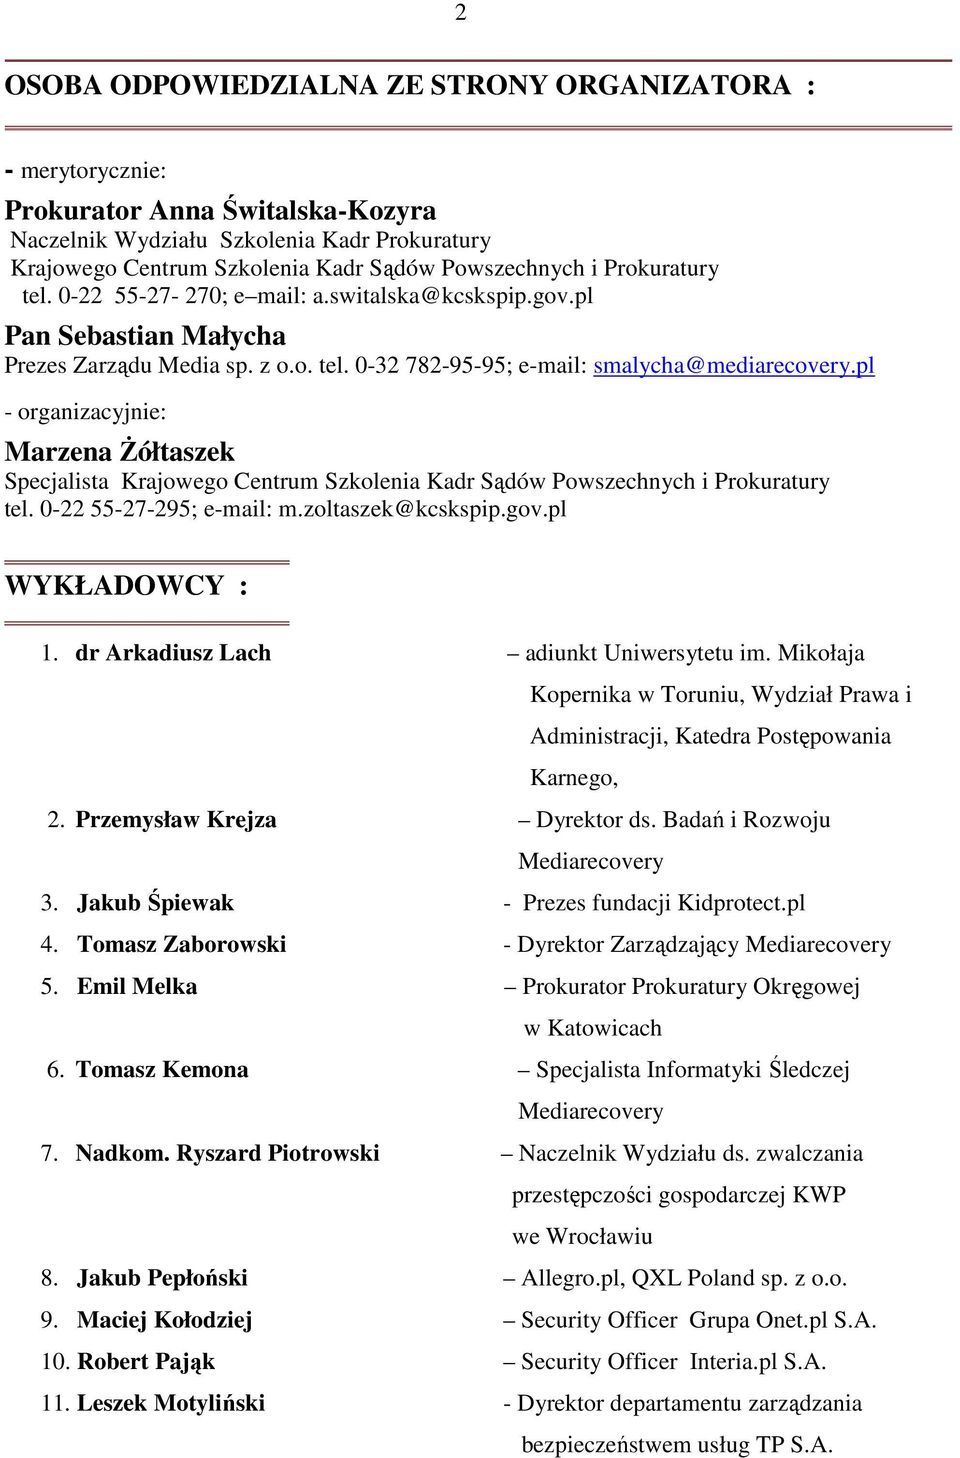 pl - organizacyjnie: Marzena śółtaszek Specjalista Krajowego Centrum Szkolenia Kadr Sądów Powszechnych i Prokuratury tel. 0-22 55-27-295; e-mail: m.zoltaszek@kcskspip.gov.pl WYKŁADOWCY : 1.